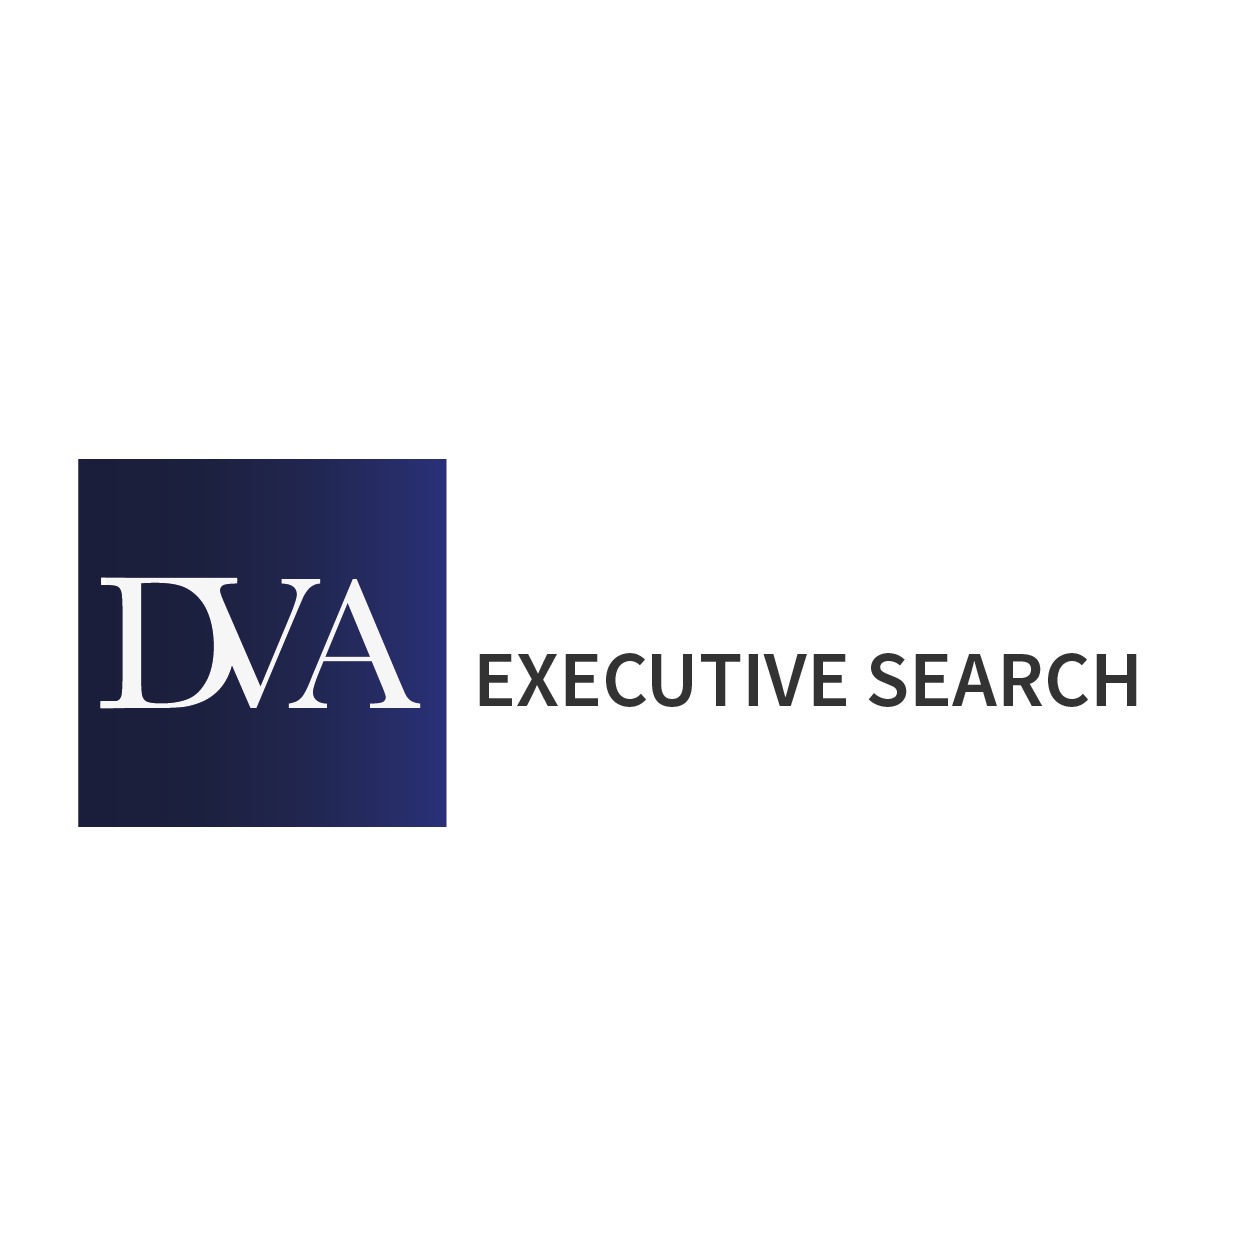 the DVA Executive Search logo.